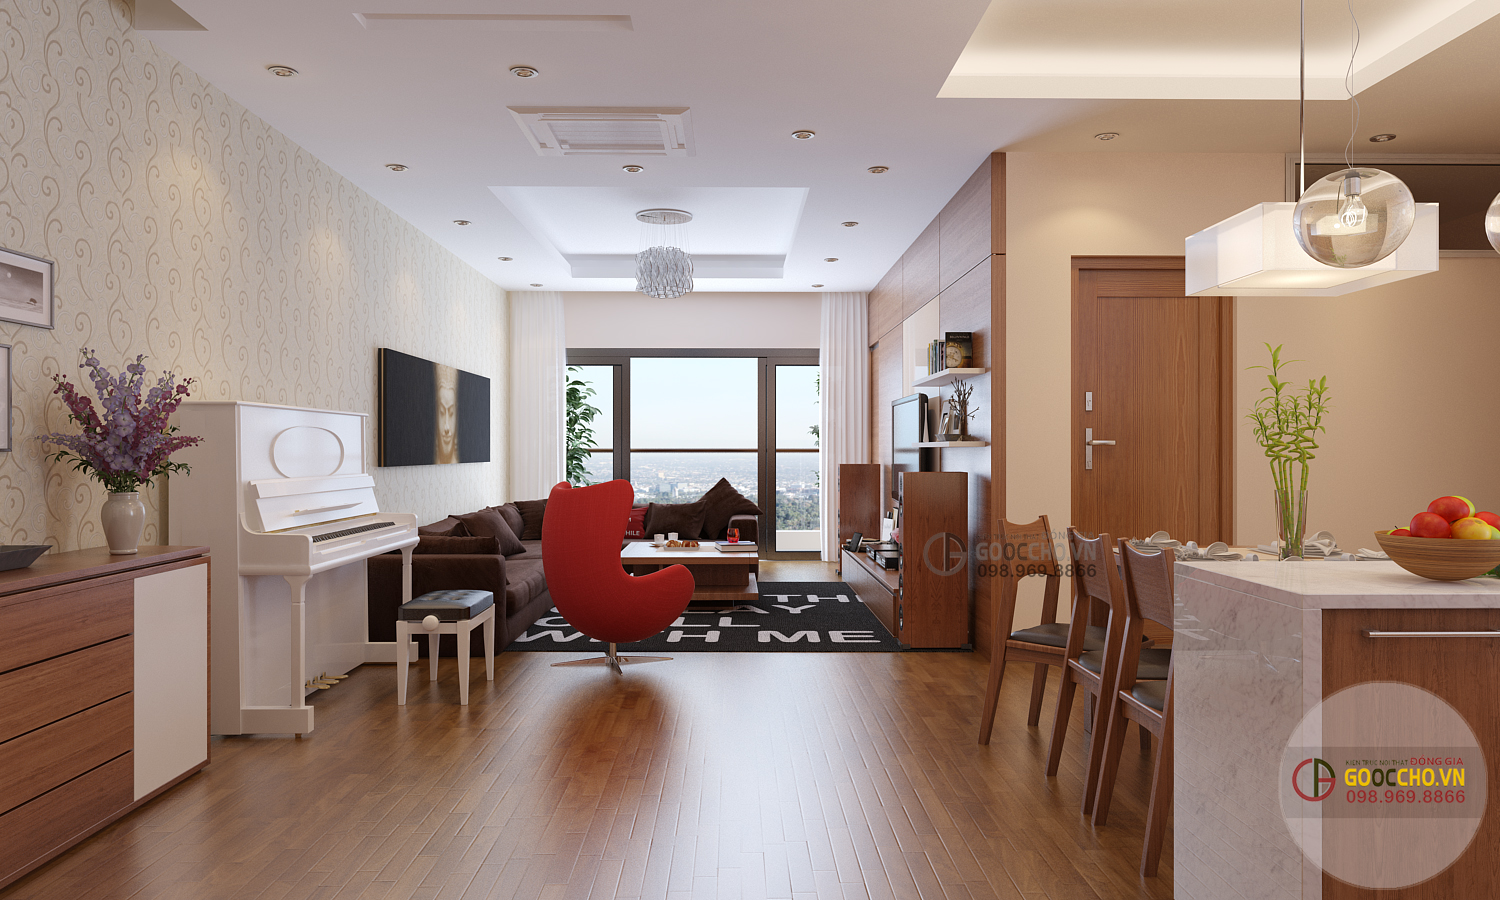 29+ Mẫu thiết kế nội thất phòng khách đẹp hiện đại cho chung cư, nhà ống